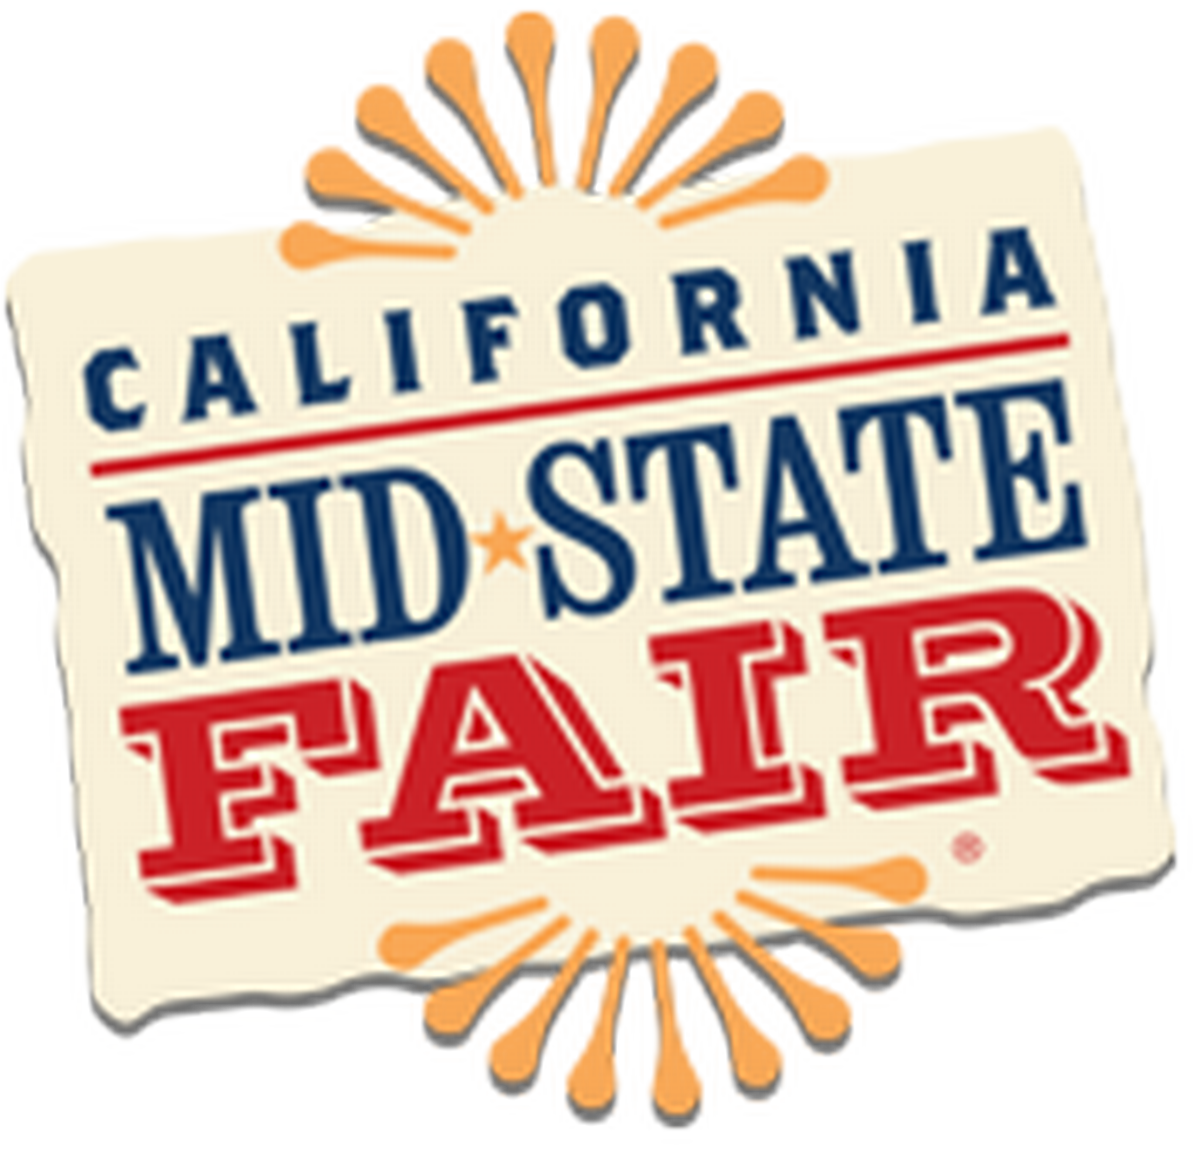 California Mid State Fair Jul 21, 2021 to Aug 1, 2021